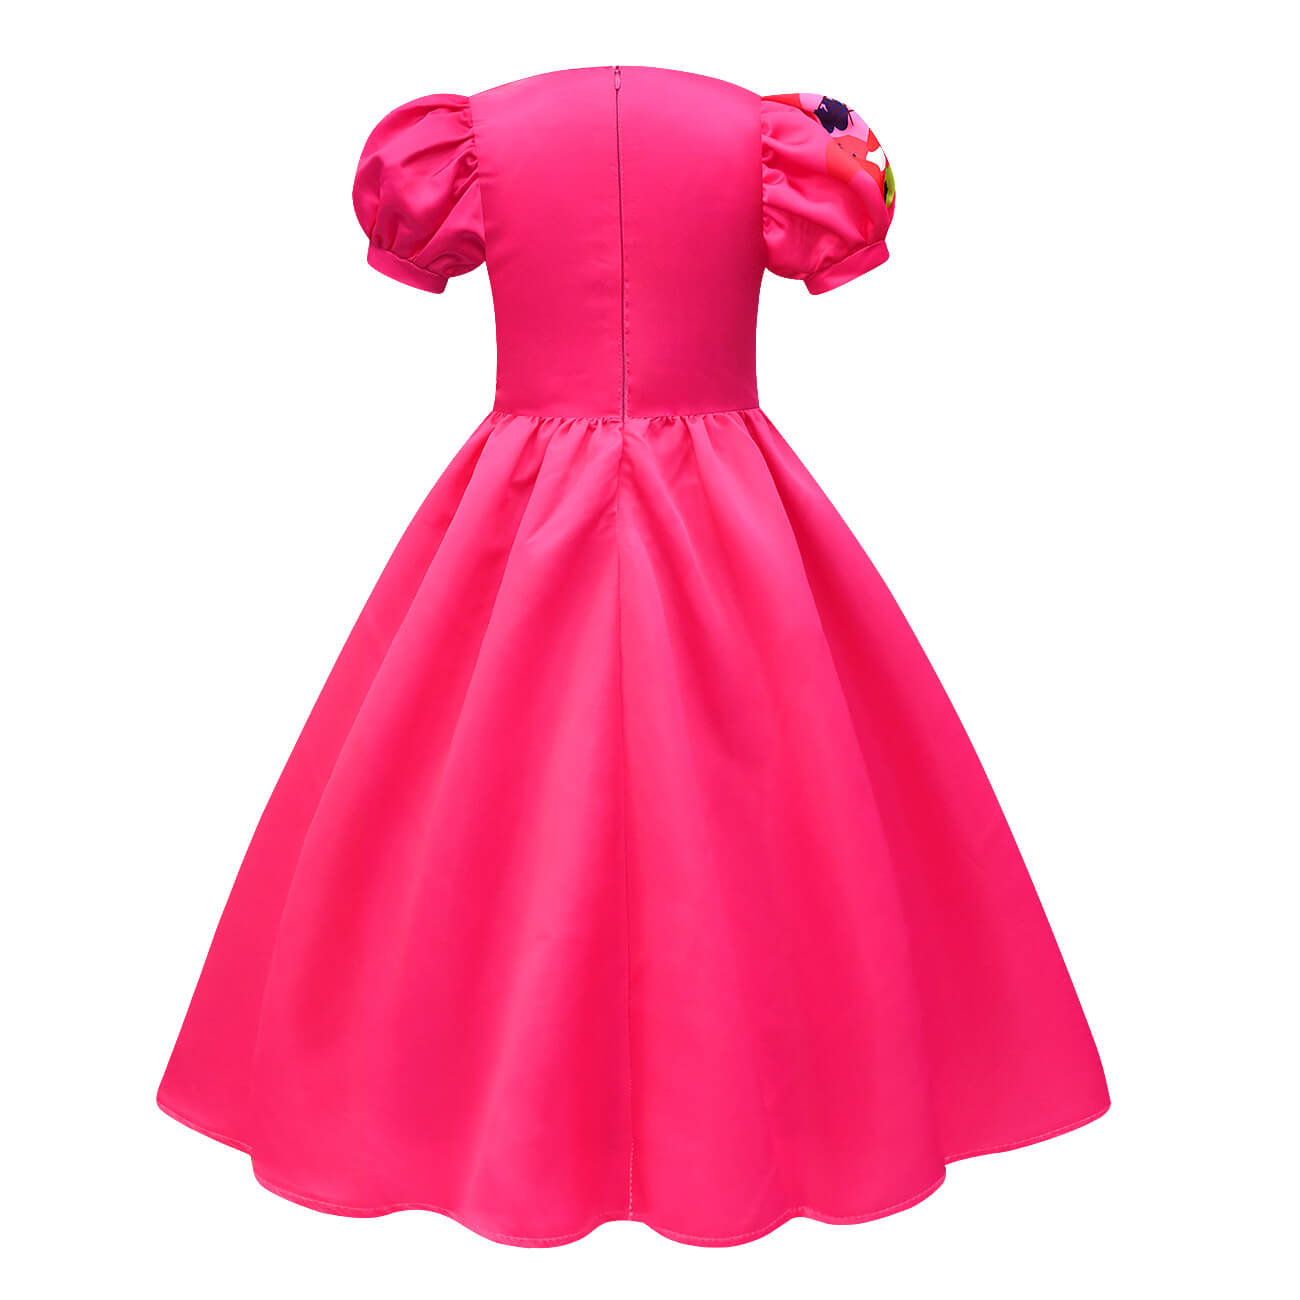 Weird Pink Dress Kate McKinnon Cosplay Costume Hot Pink Puff Sleeve Dress